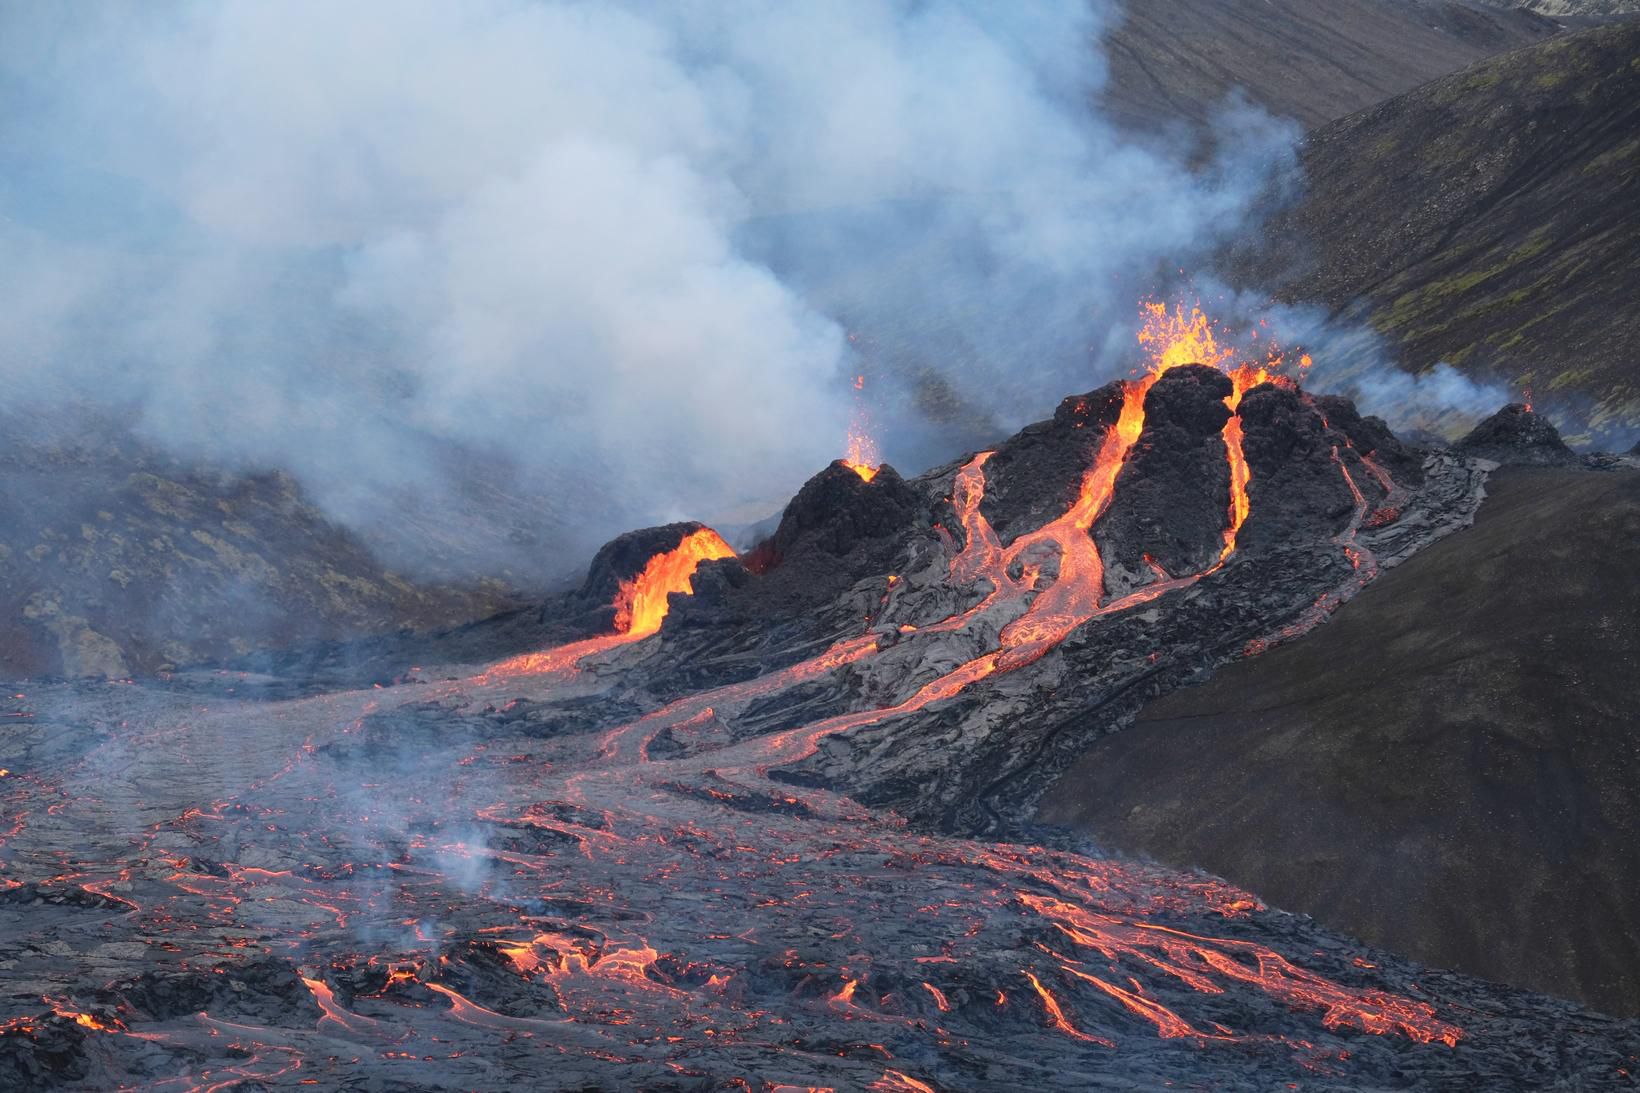 Сильные землетрясения извержения вулканов мощные гейзеры. Извержение вулкана в Исландии 2021. Извержение вулкана в Исландии Эйяфьятлайокудль. Исландия вулкан Эйяфьятлайокудль извержение 2010. Эйяфьядлайёкюдль вулкан в Исландии.